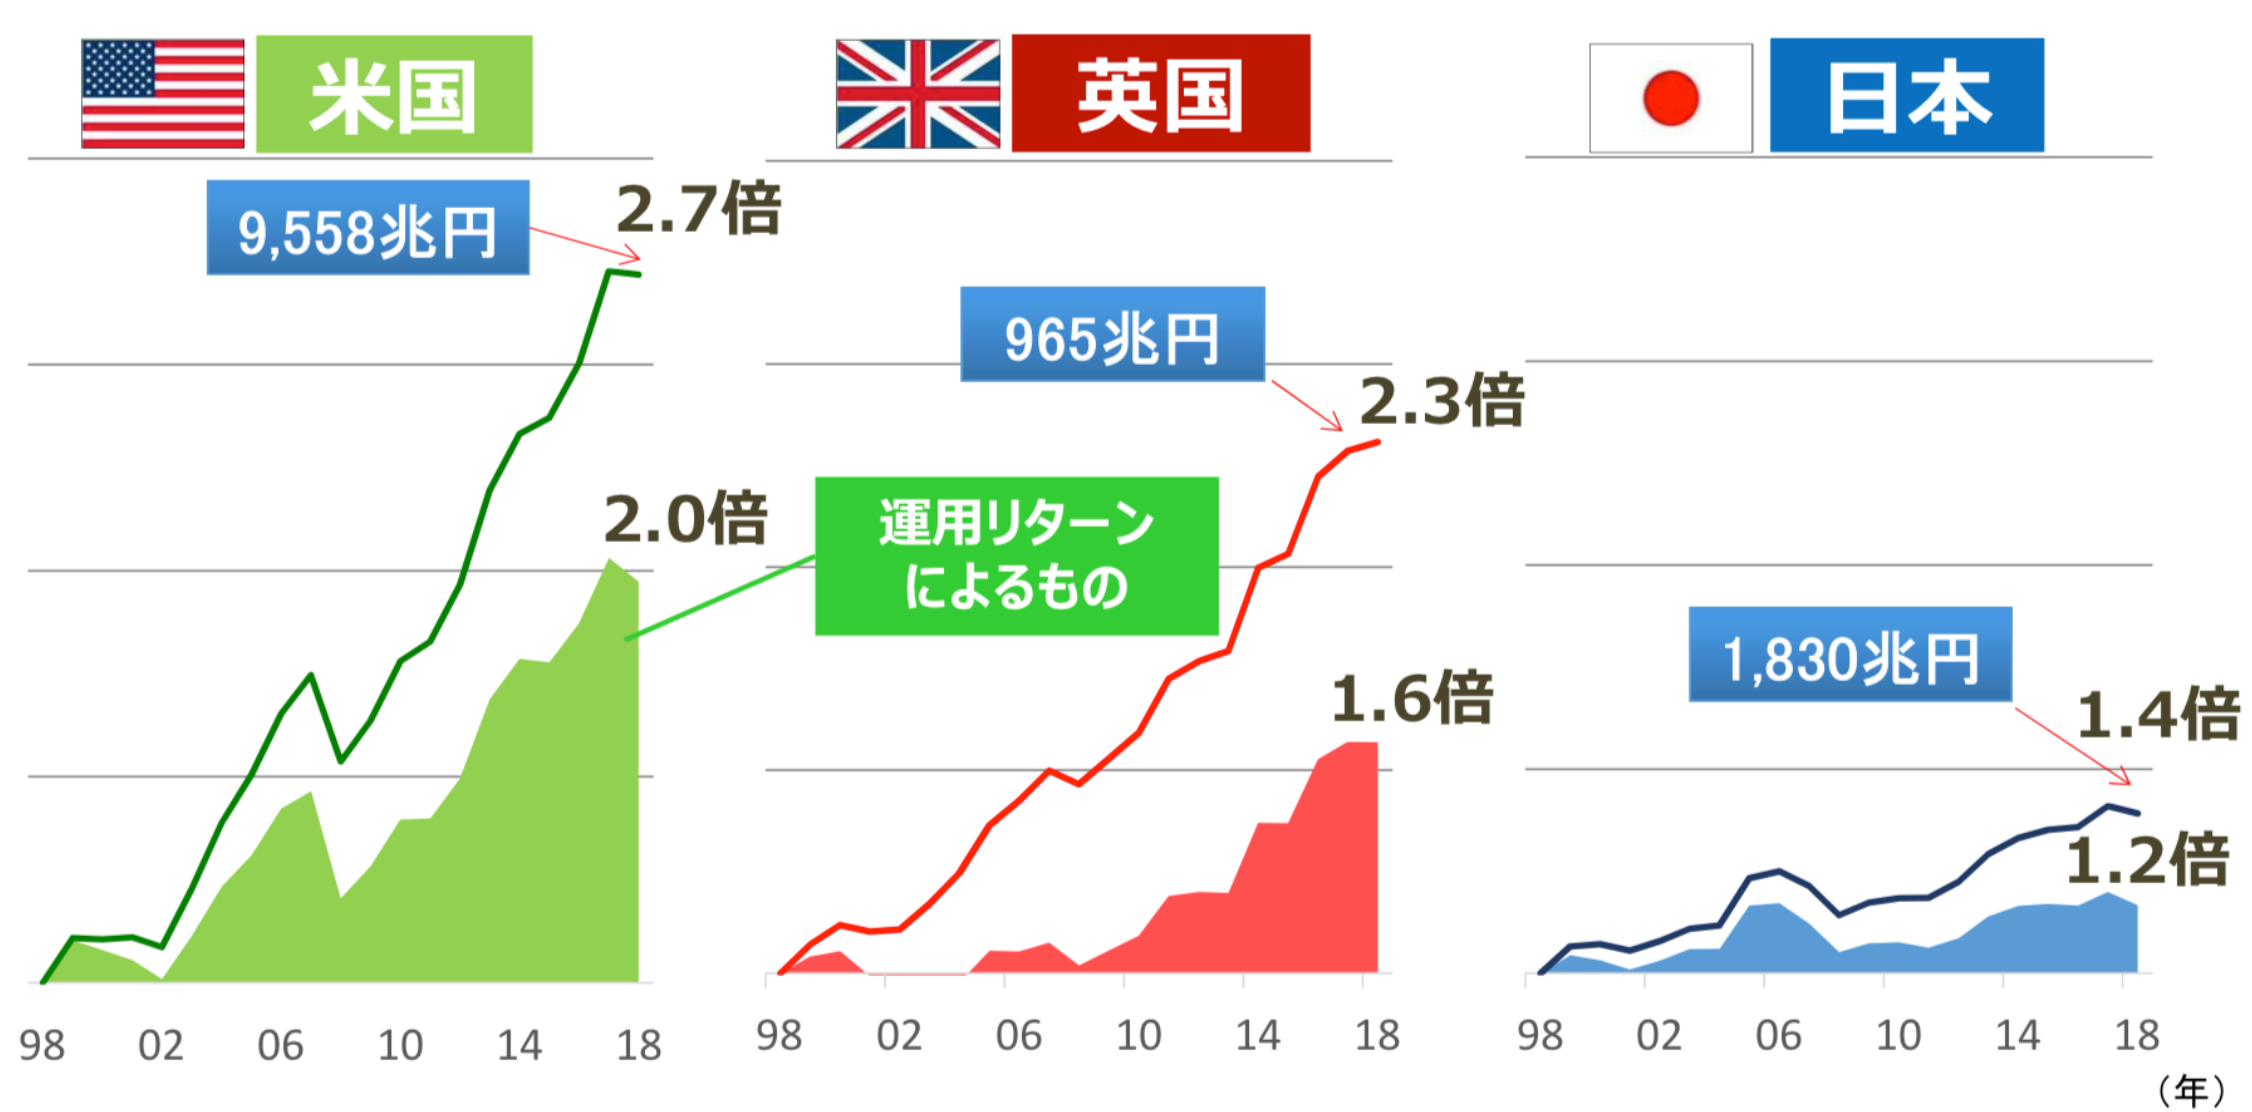 日本では運用リターンによる金融資産額の伸びが小さい